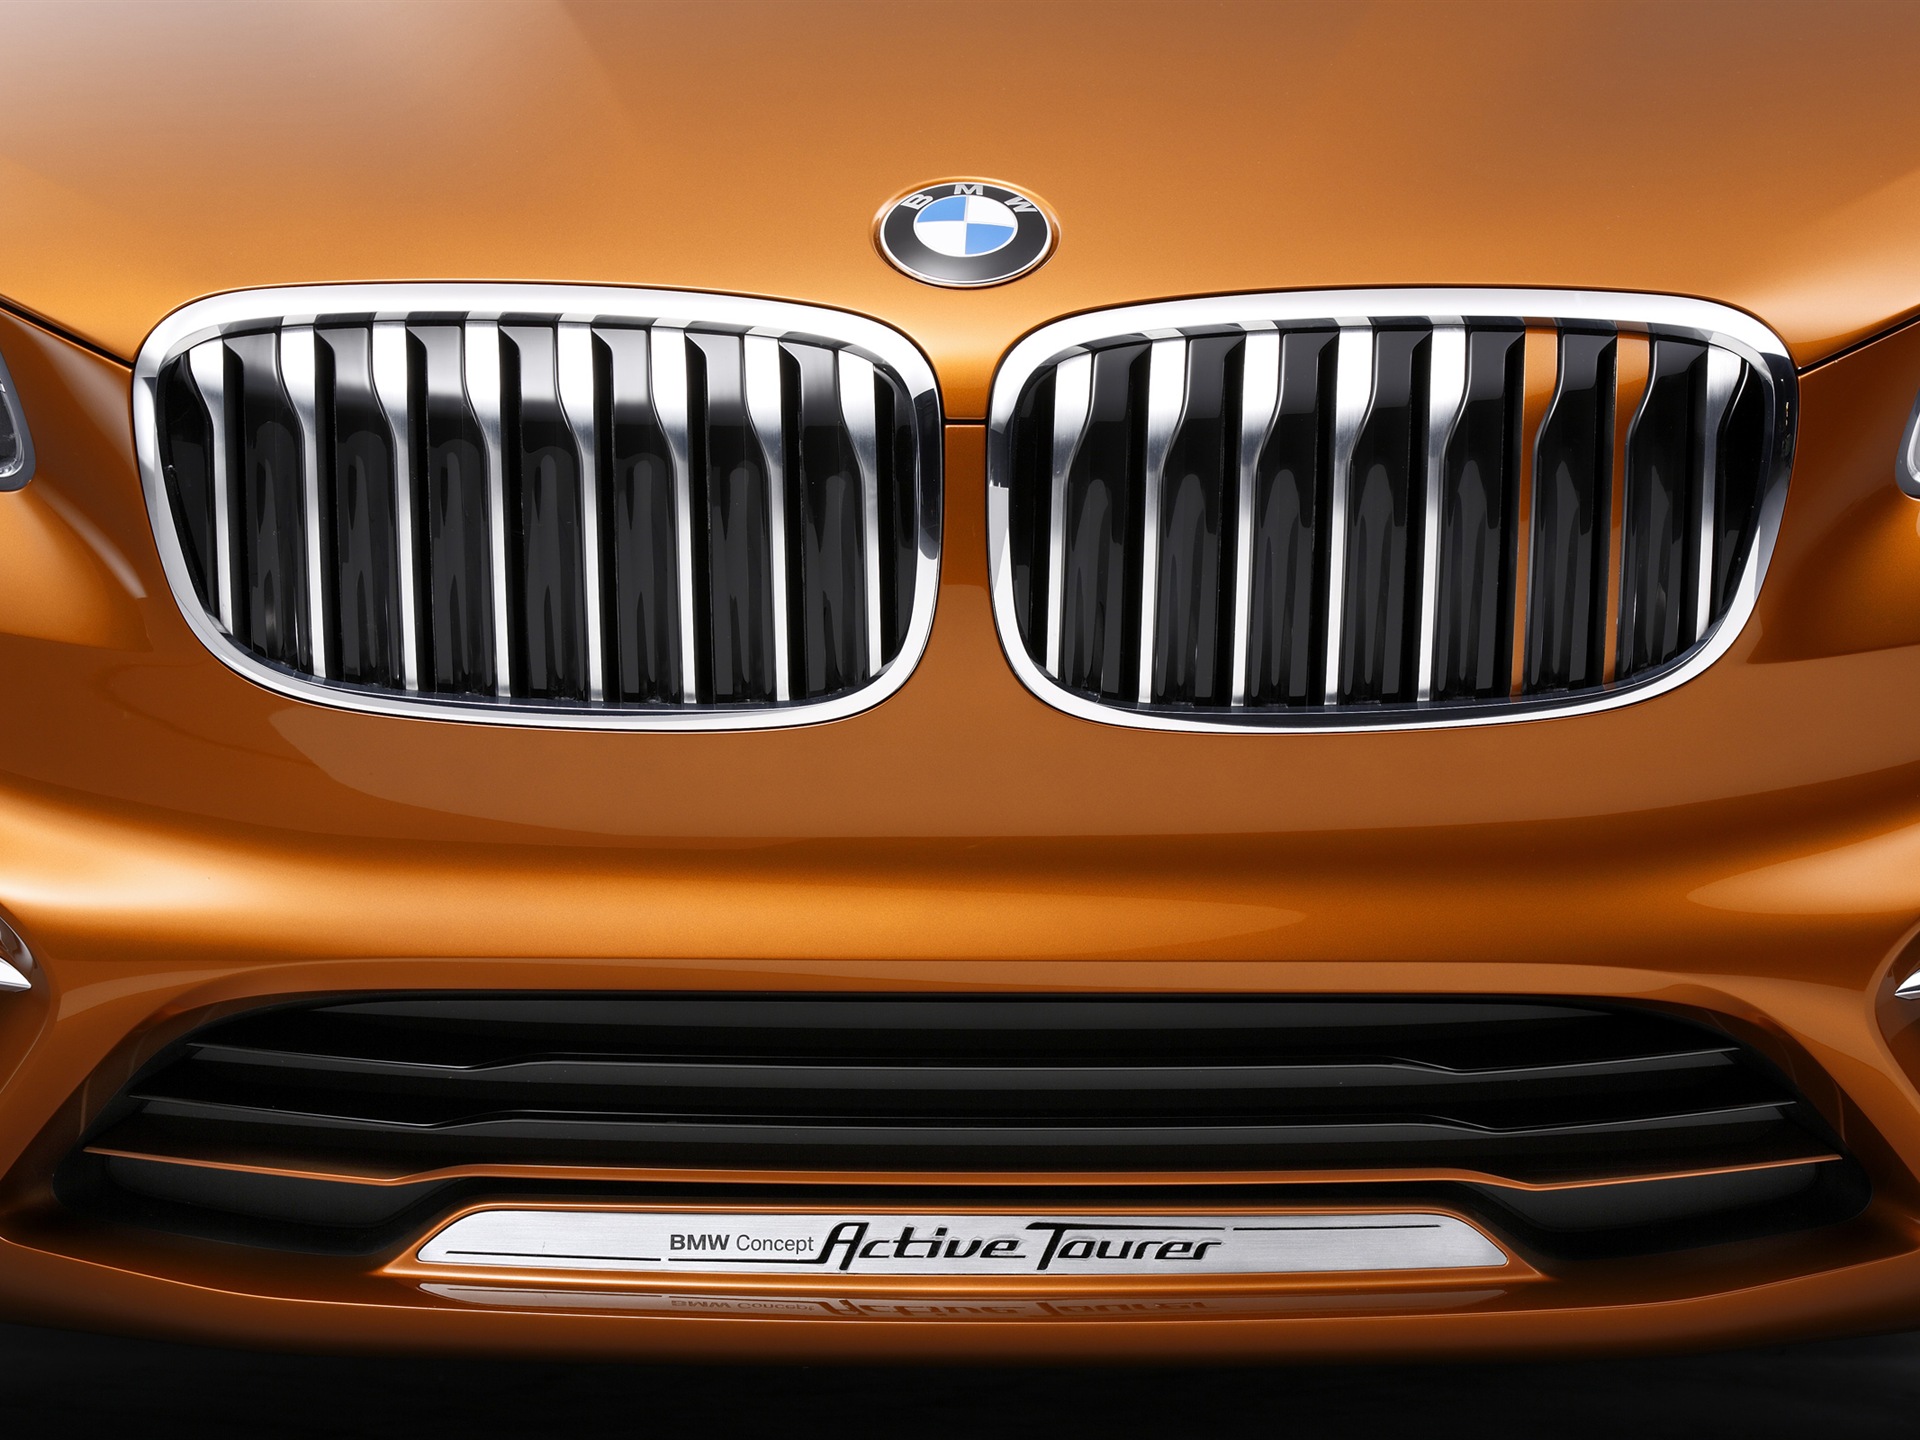 2013 BMW Concept Active Tourer 宝马旅行车 高清壁纸15 - 1920x1440